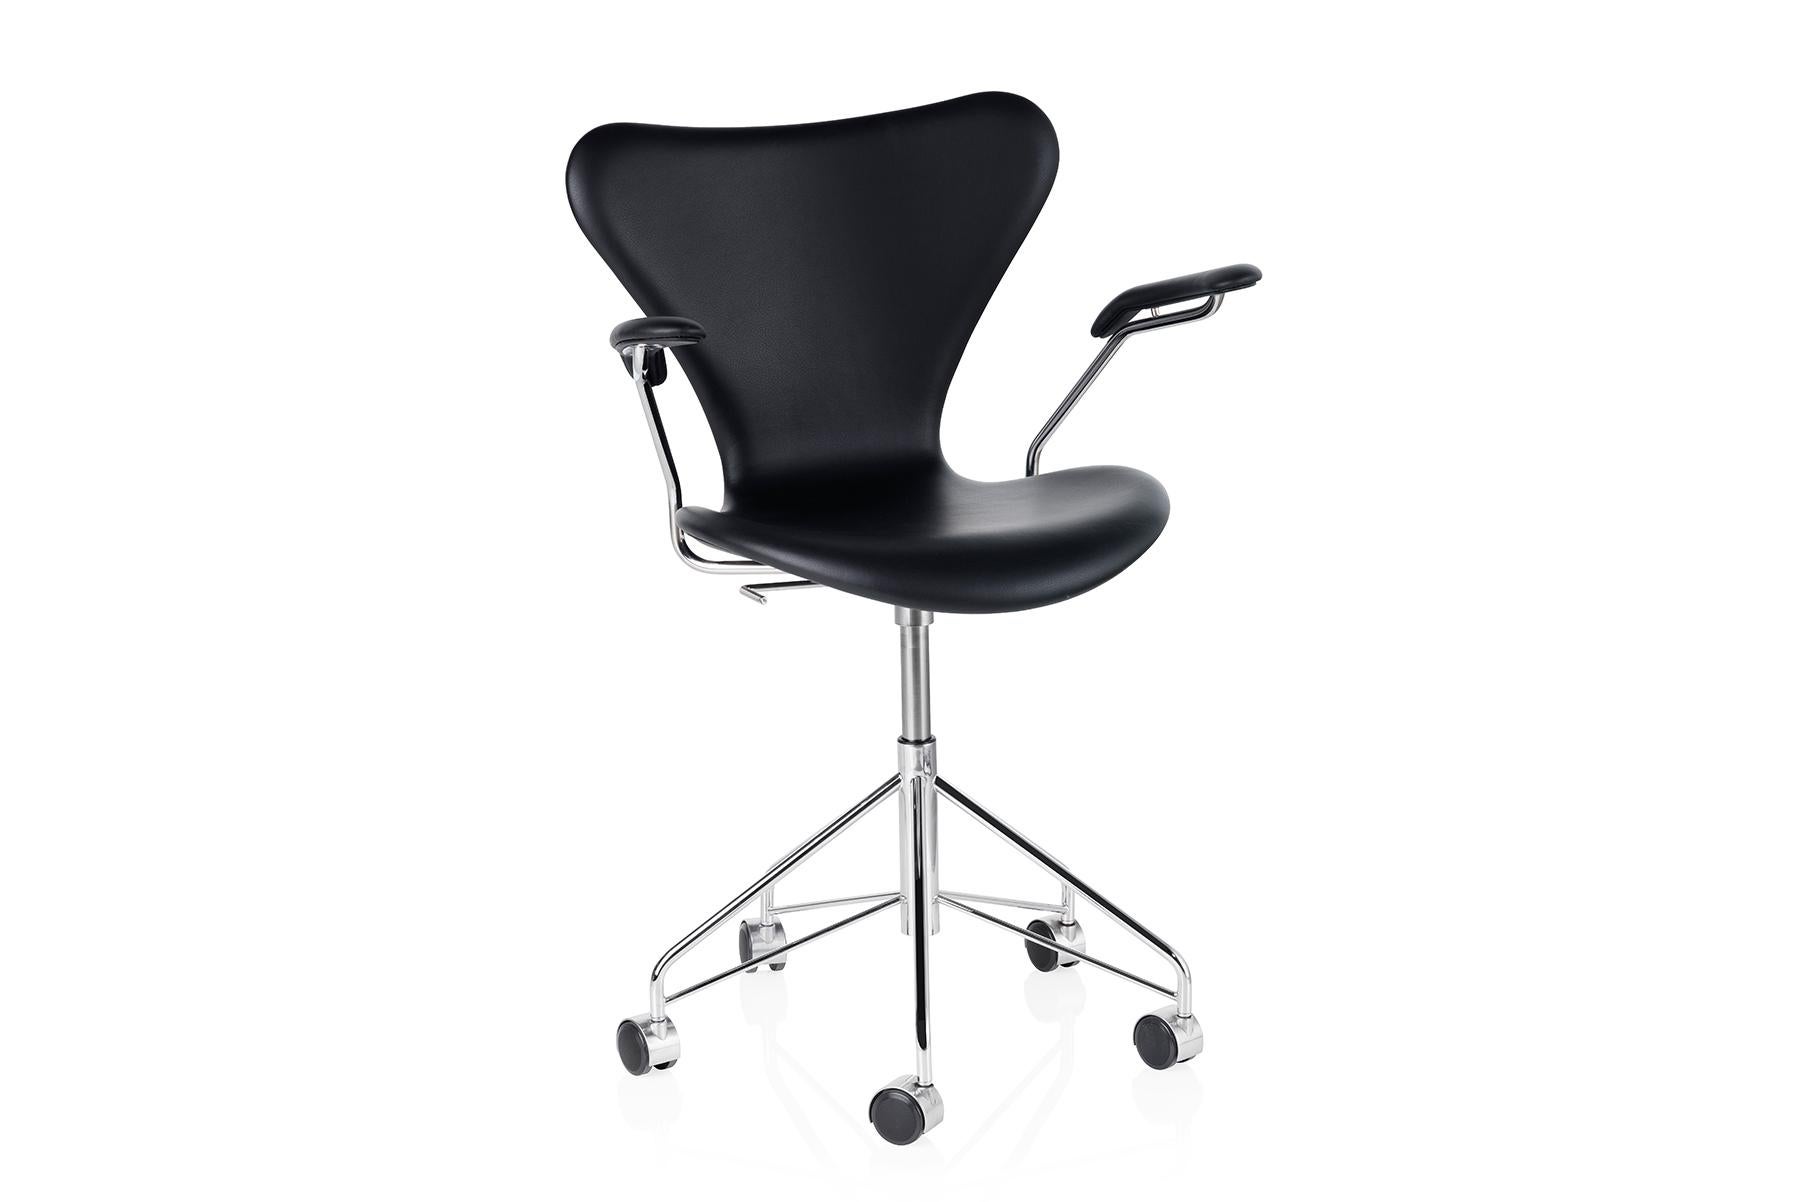 Entdecken Sie den kultigen Stuhl der Serie 7 mit einem funktionalen Drehfuß und einer gepolsterten Vorderseite für ein schönes und komfortables Ergebnis. Der vierbeinige, stapelbare Stuhl stellt die Krönung der Laminiertechnik dar. Der Visionär Arne